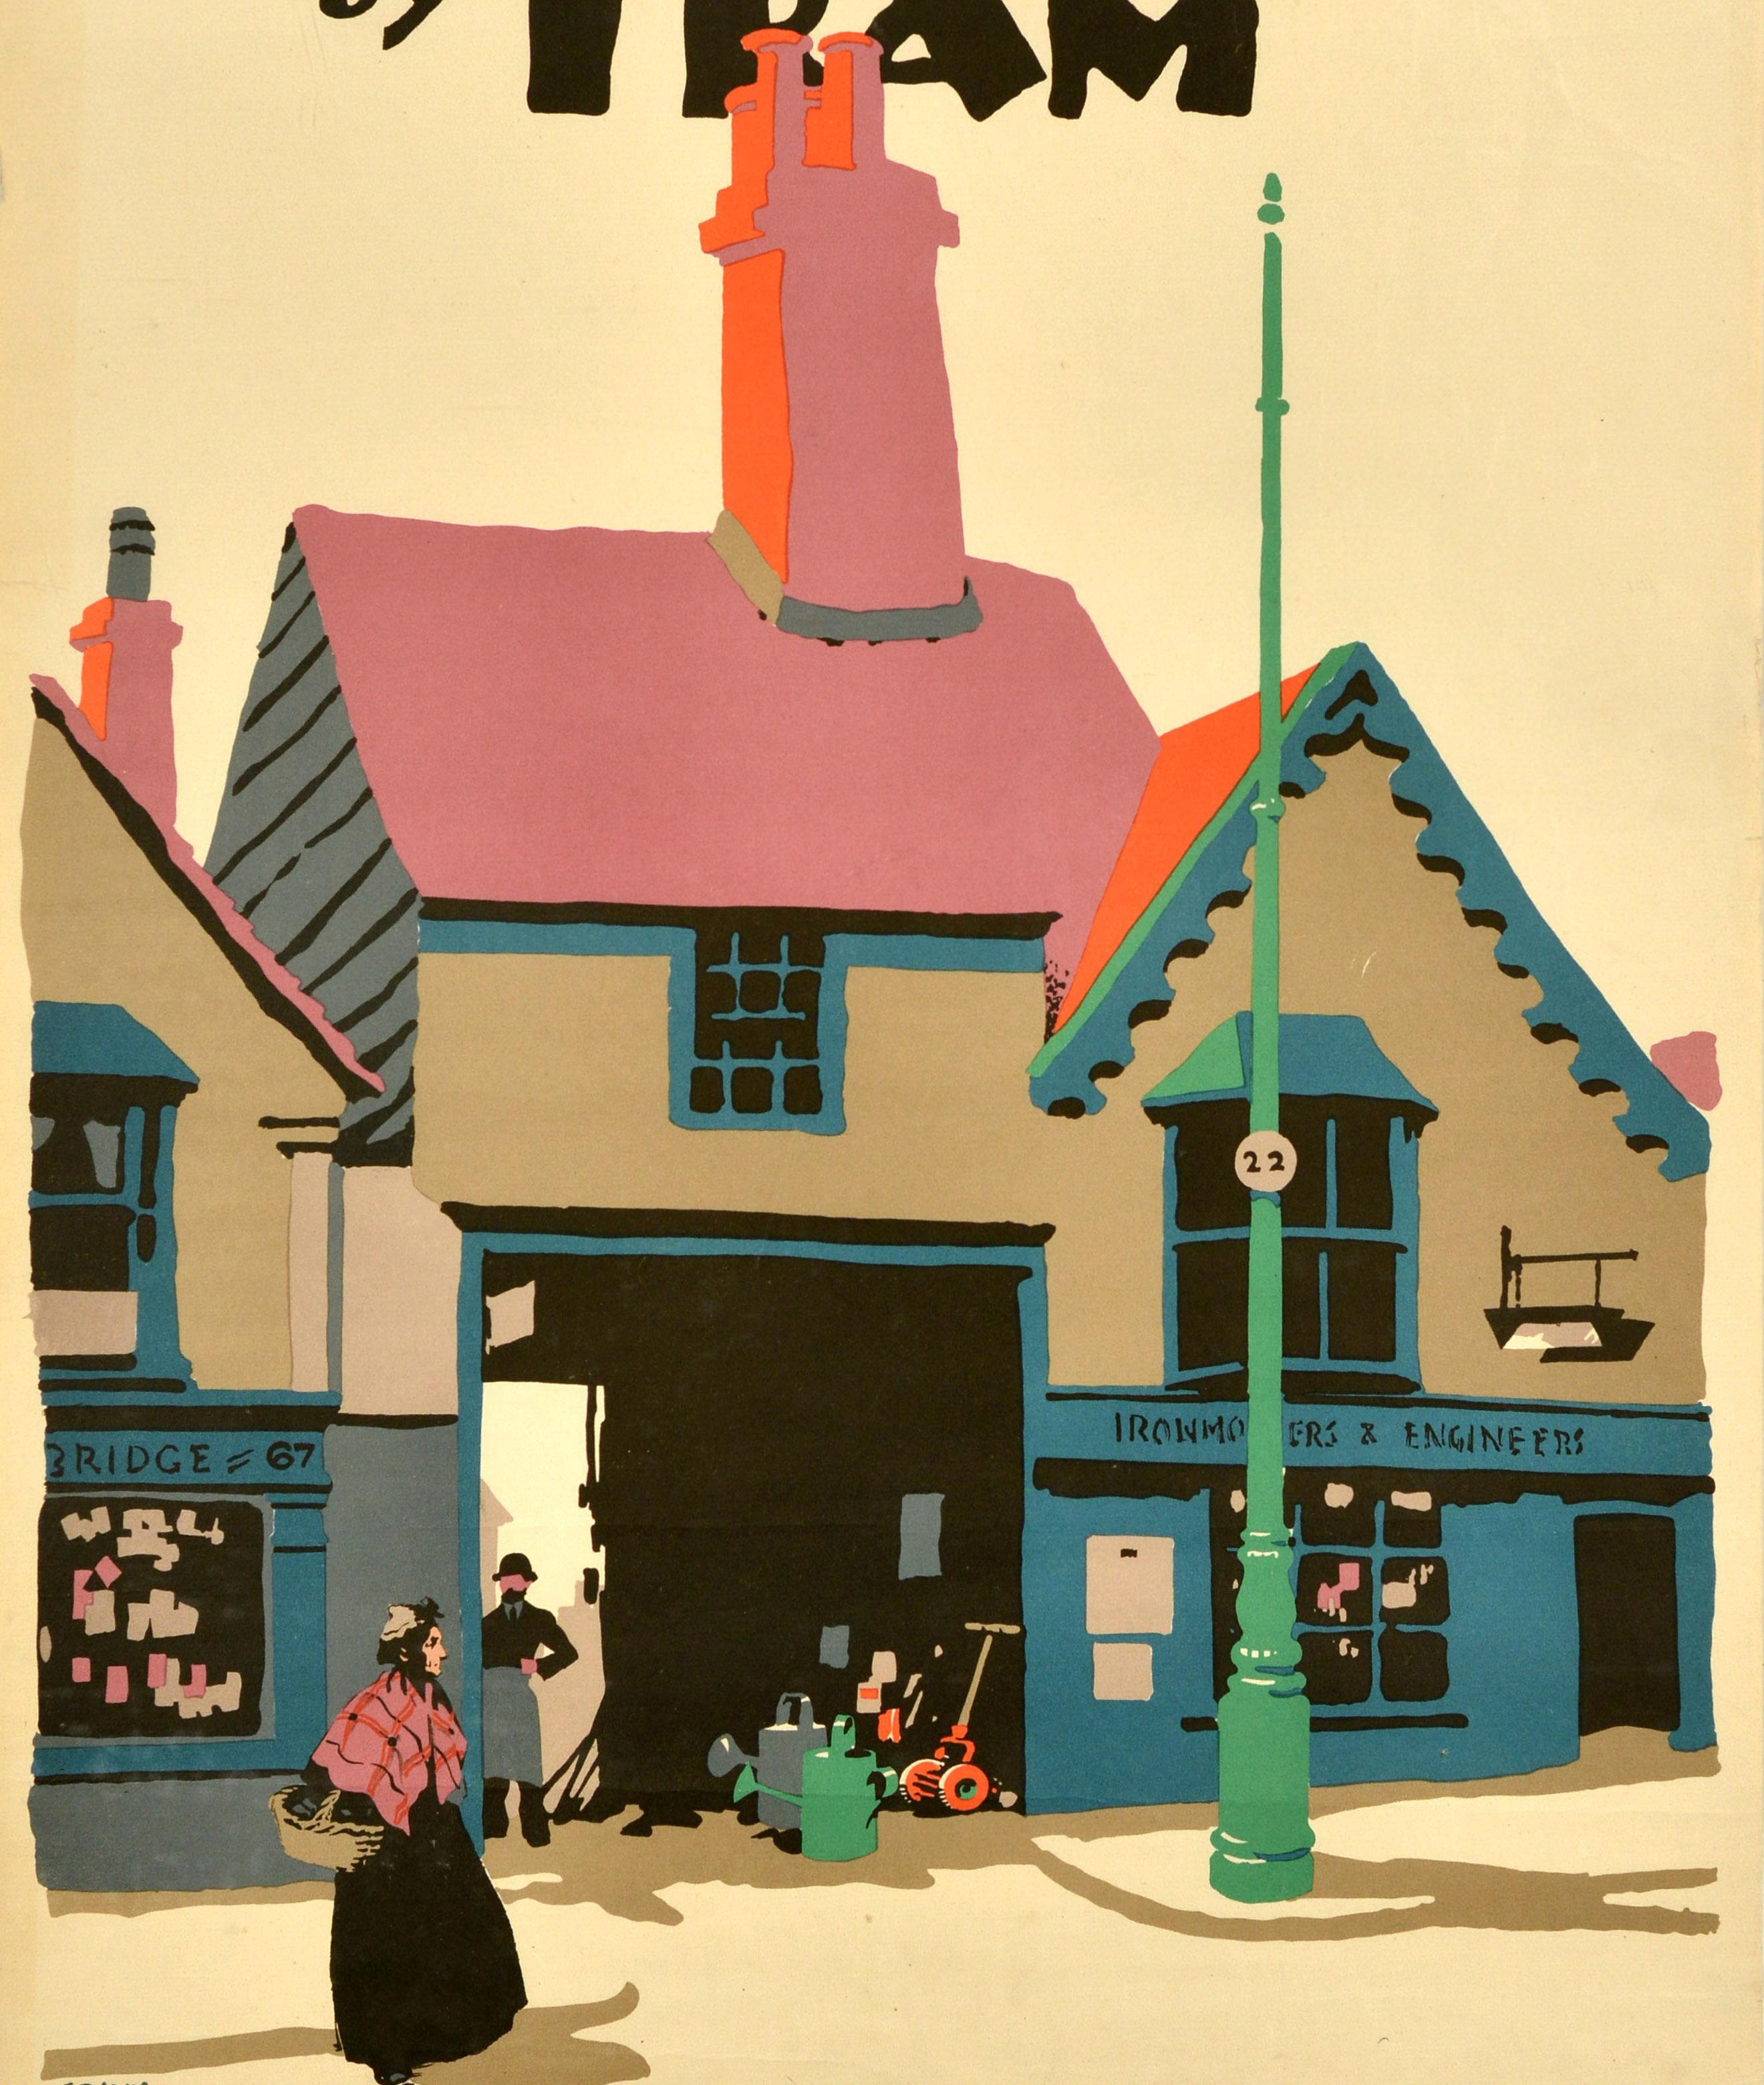 Original-Reiseplakat - Edgware by Tram - mit einem farbenfrohen Bild des bekannten britischen Plakatkünstlers Frank Newbould (1887-1951), das eine Dame mit Schal und Korb vor einem Ladengebäude mit der Nummer 67 und einem Eisenwarengeschäft mit